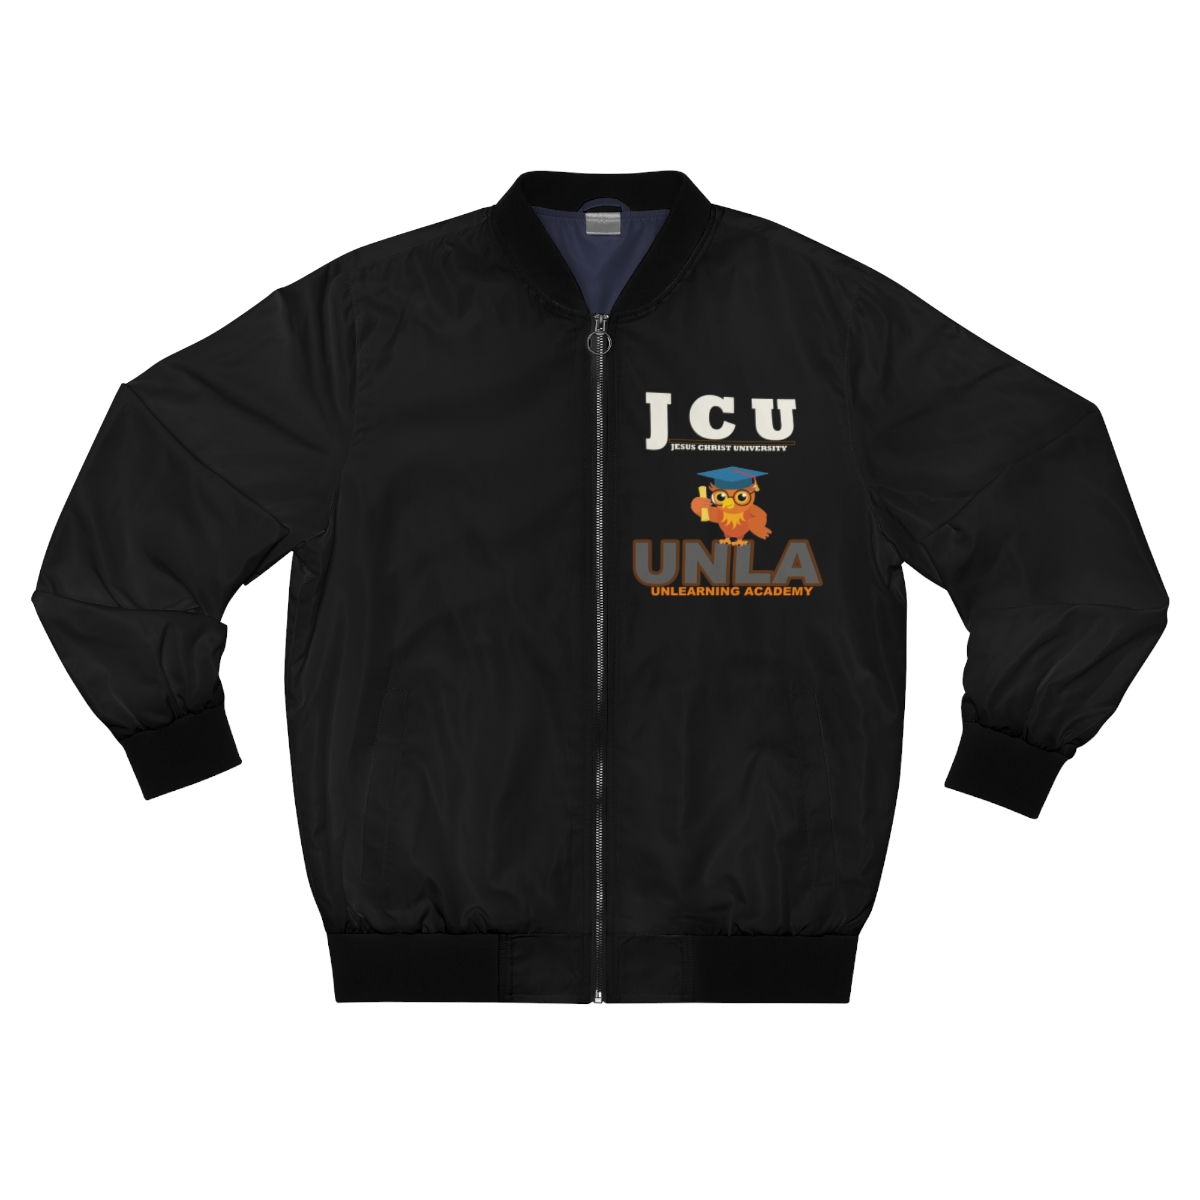 Jesus Christ University Jacket product thumbnail image